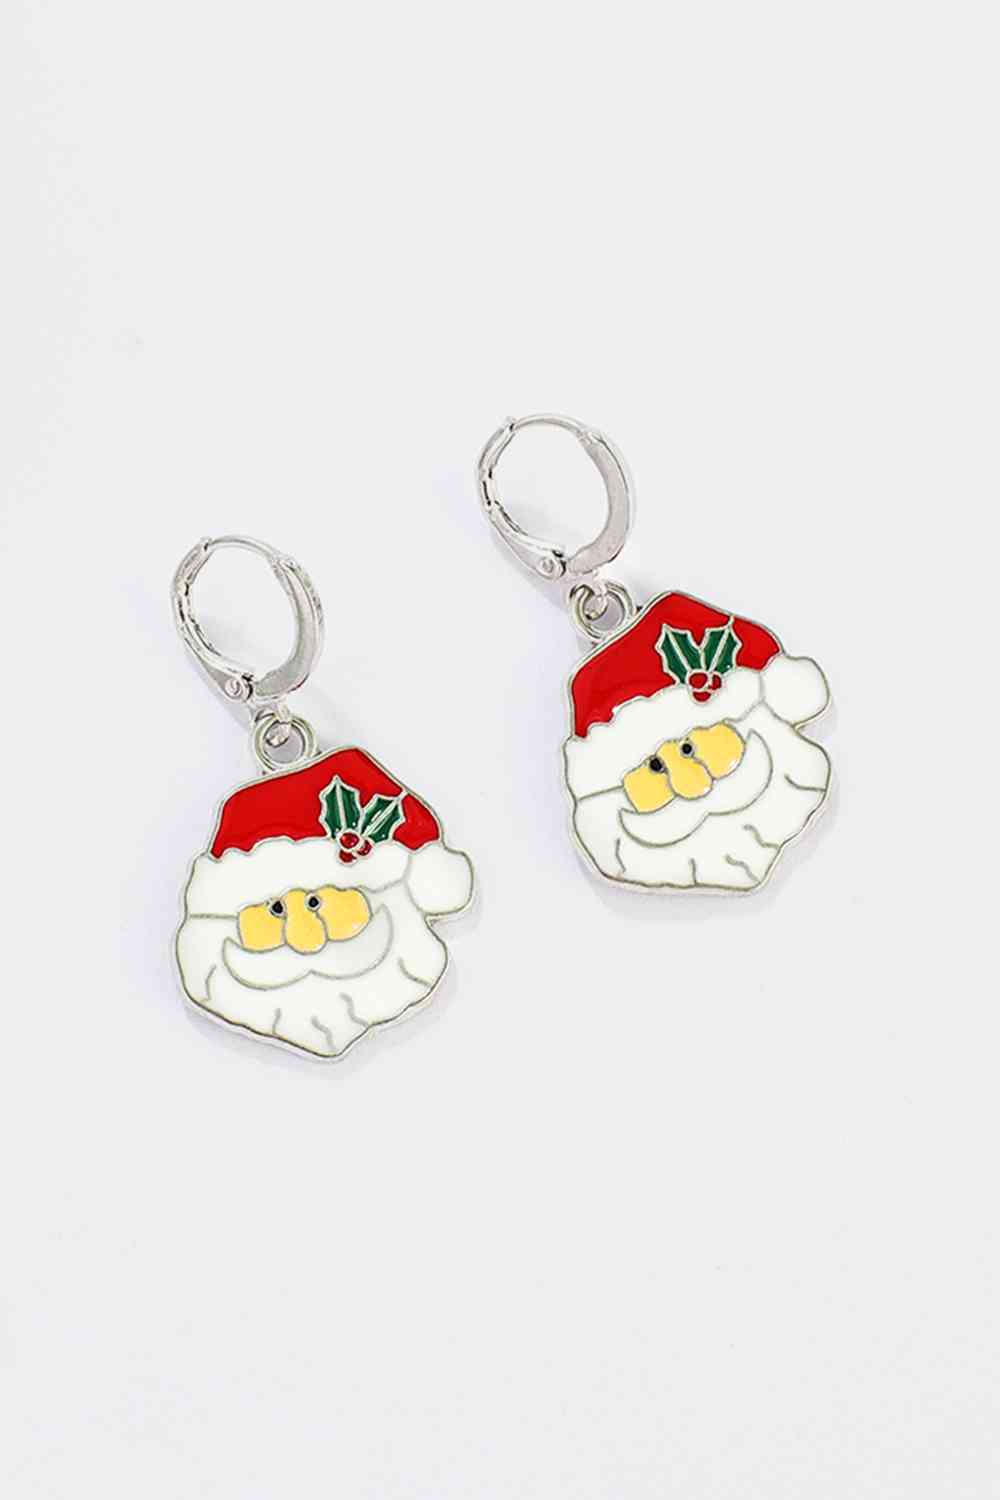 Christmas Theme Alloy Earrings - Women’s Jewelry - Earrings - 7 - 2024